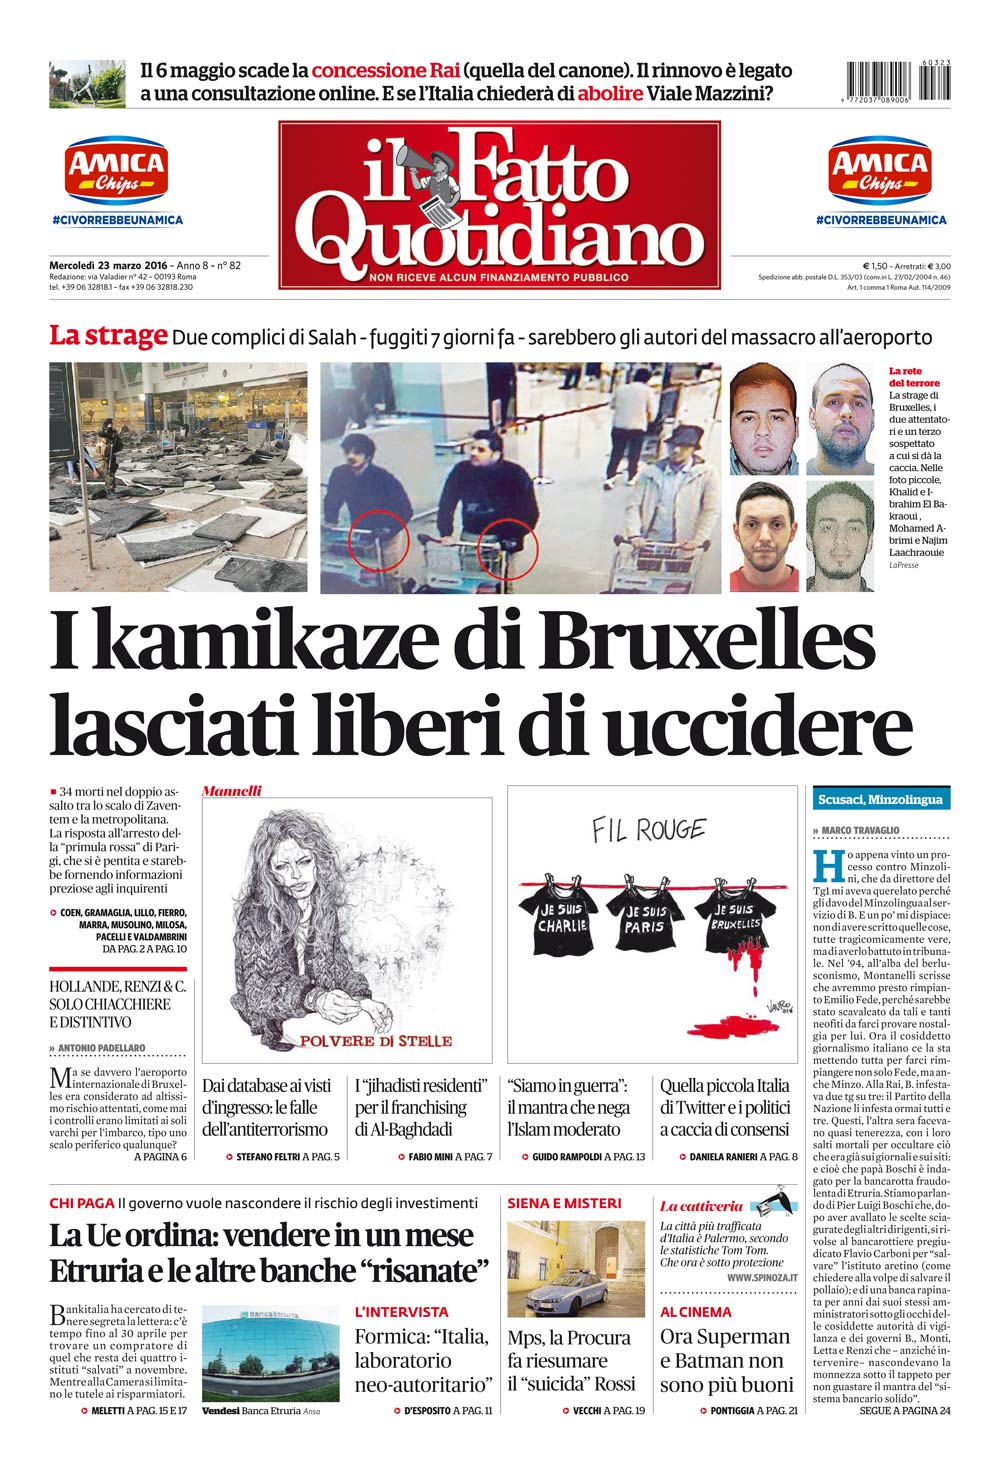 Prima Pagina Il Fatto Quotidiano - I kamikaze di Bruxelles lasciati liberi di uccidere